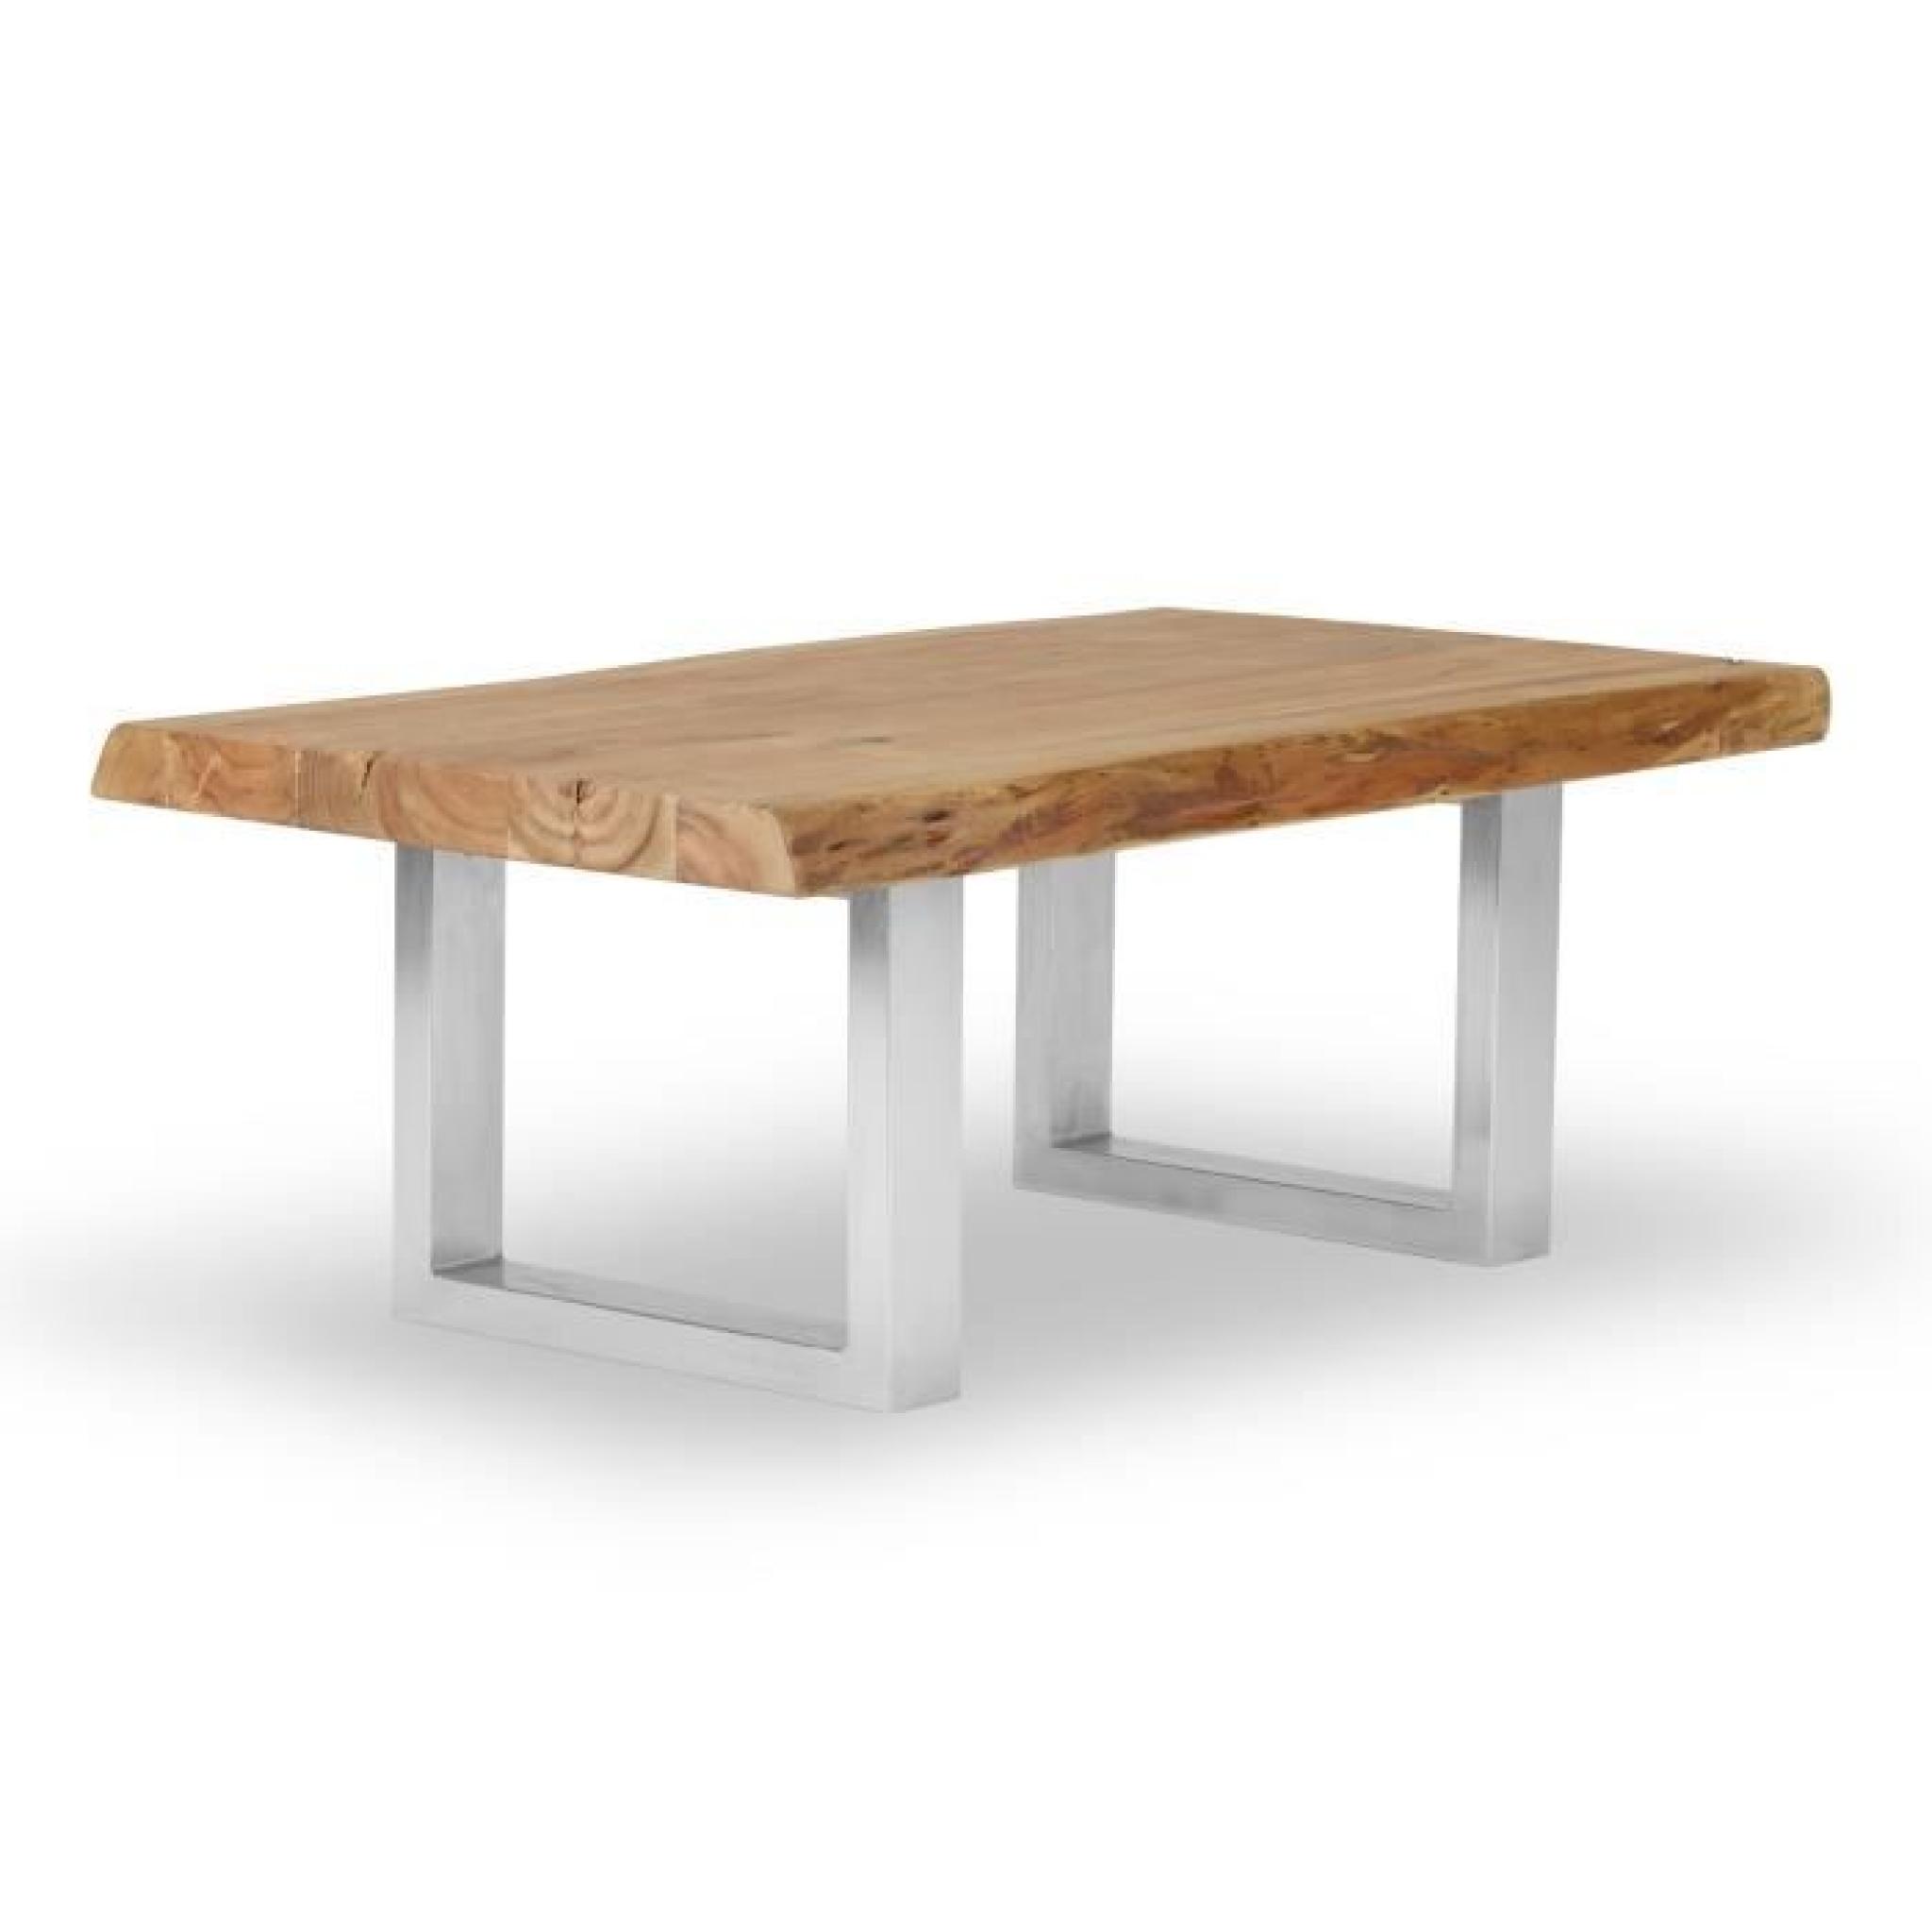 Table basse KENAI 150x70 en acacia clair laqué massivum